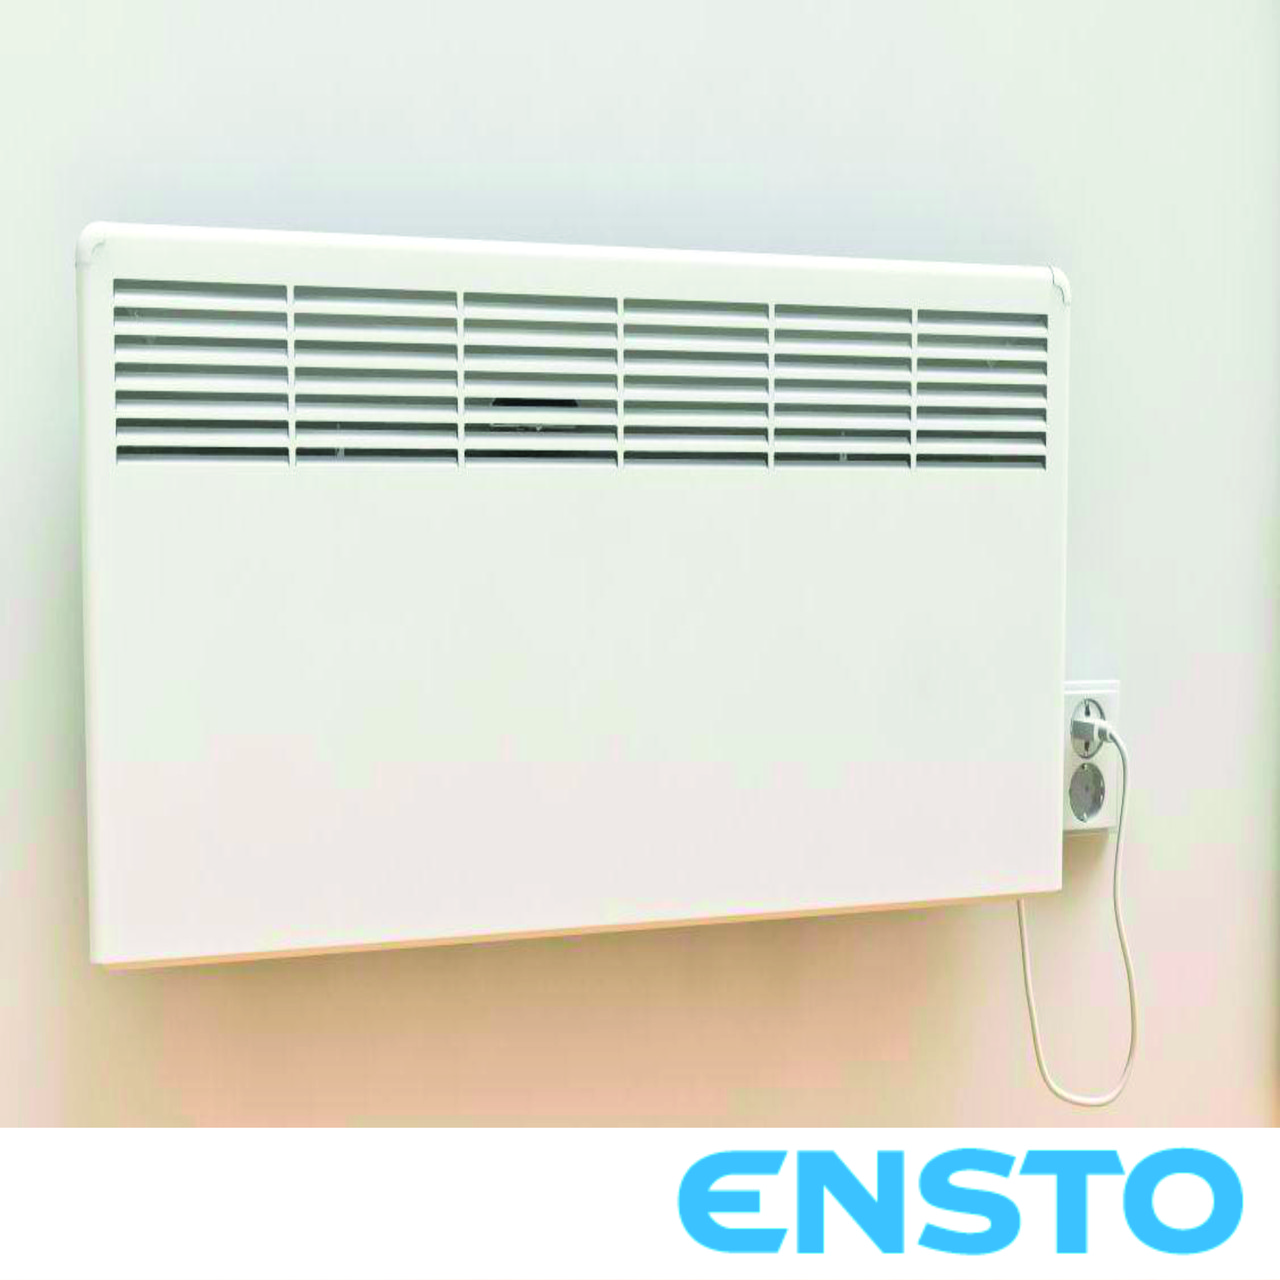 Електричний обігрівач - конвектор Ensto 1000 Вт з термостатом та вилкою, фото 1